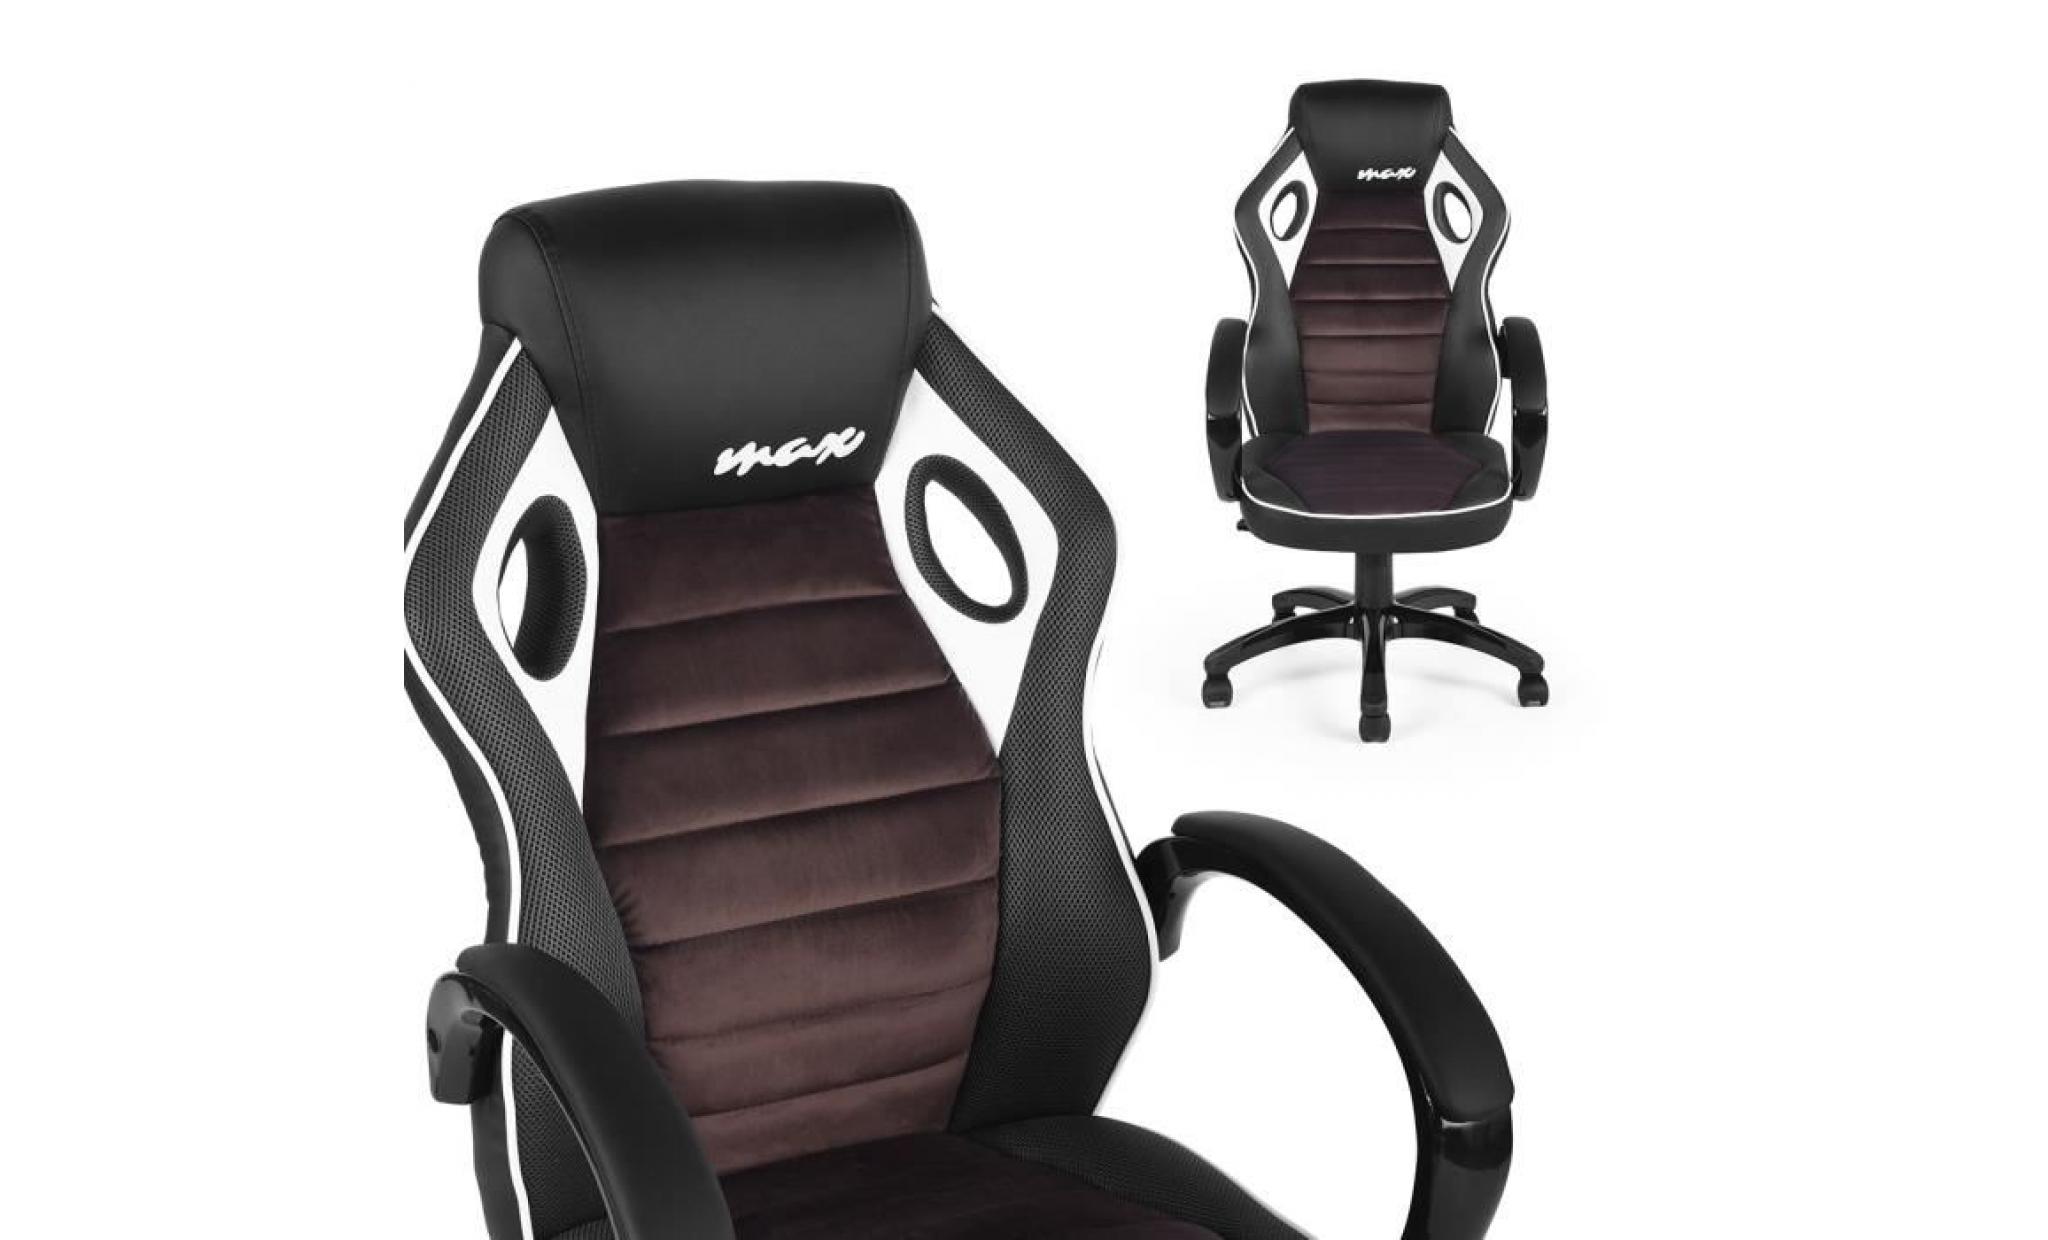 fauteuil gamer ergonomique avec fonction d'inclinaison rotation 360 degrés hauteur réglable accoudoirs noir   marron   blanc